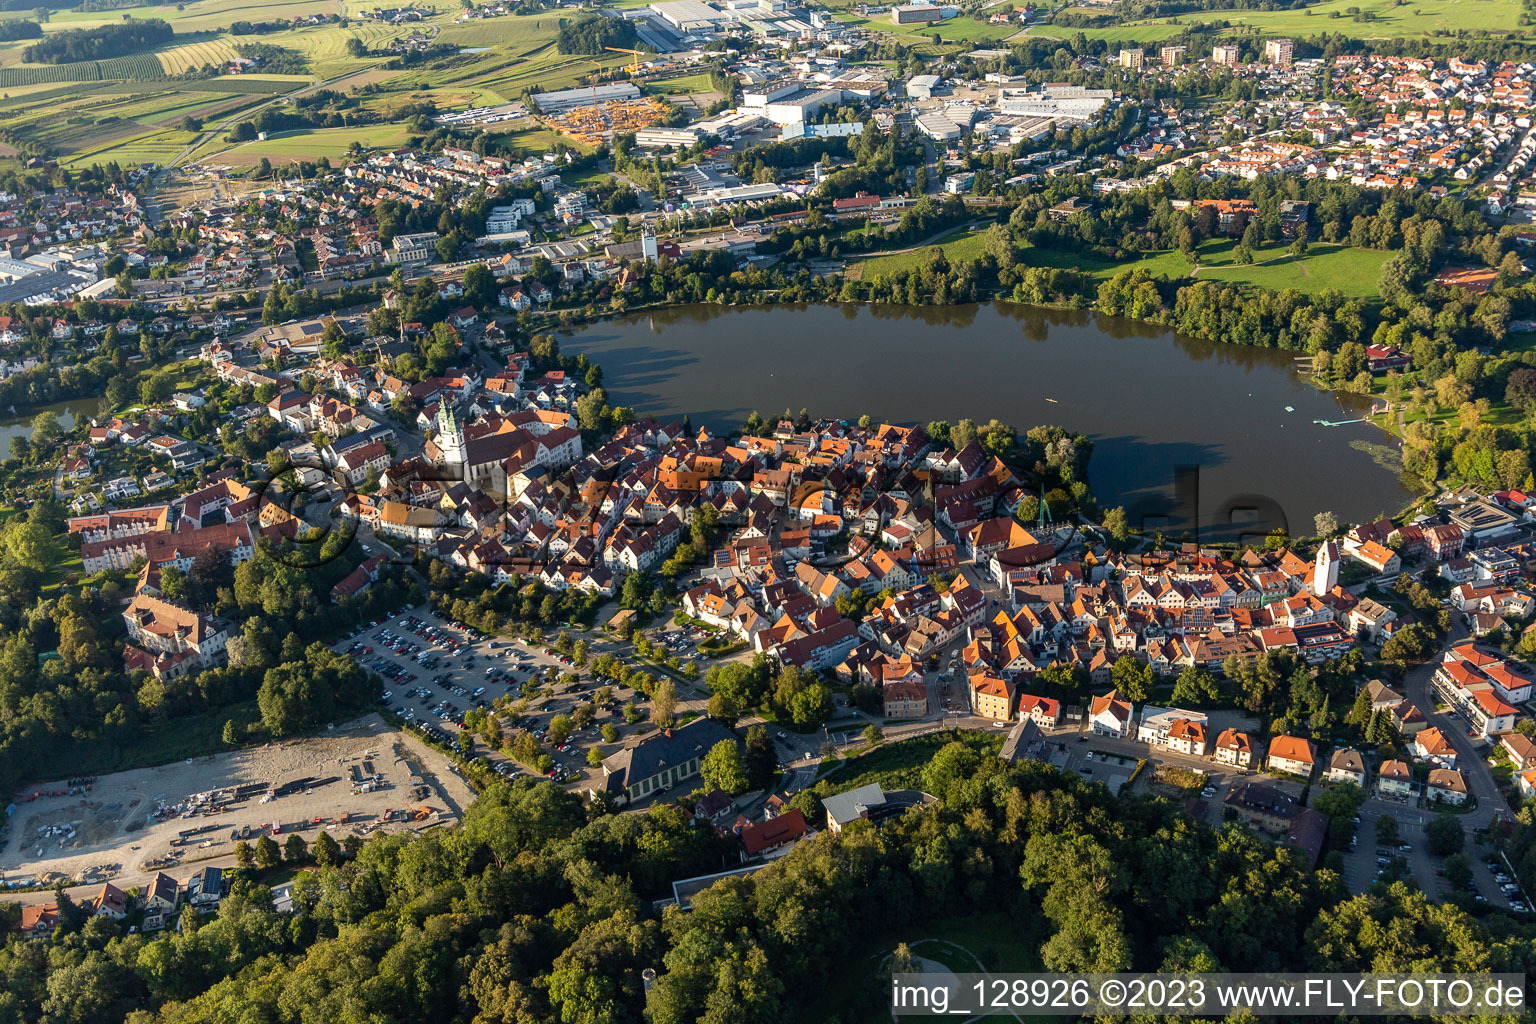 Photographie aérienne de Vue sur la ville du centre-ville, sur les rives du lac de la ville à Bad Waldsee dans le département Bade-Wurtemberg, Allemagne